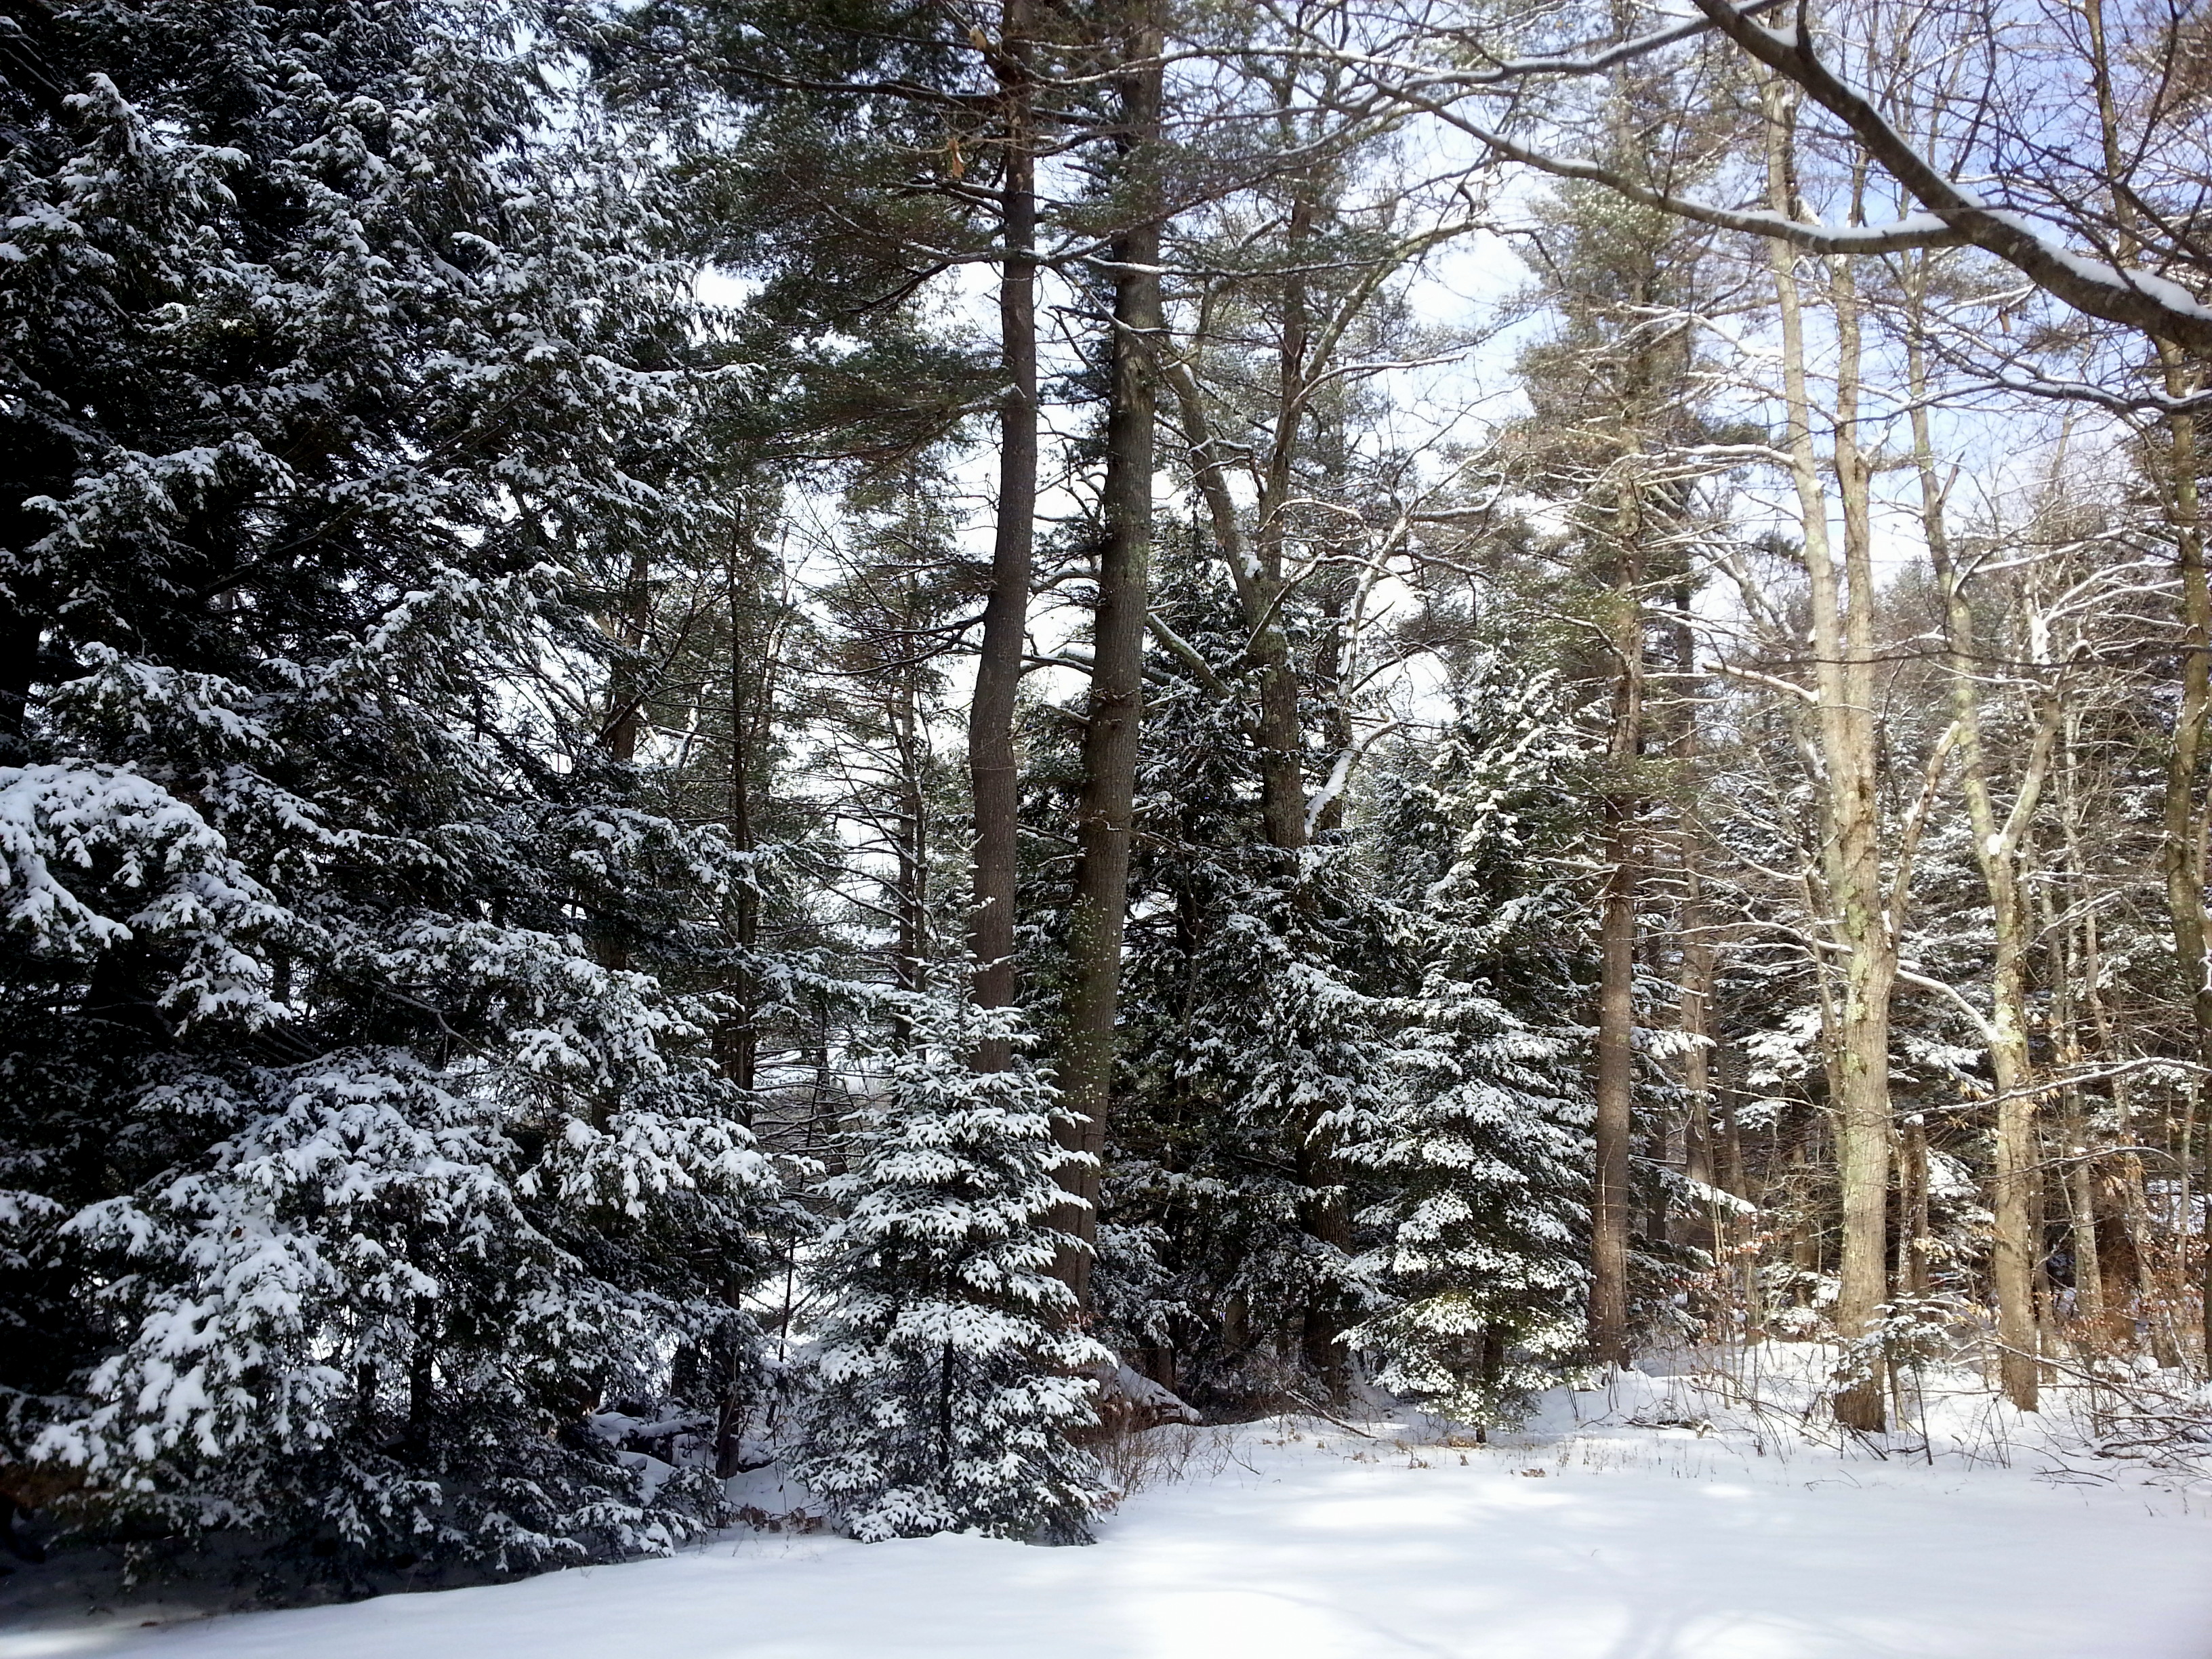 1. Winter Woods